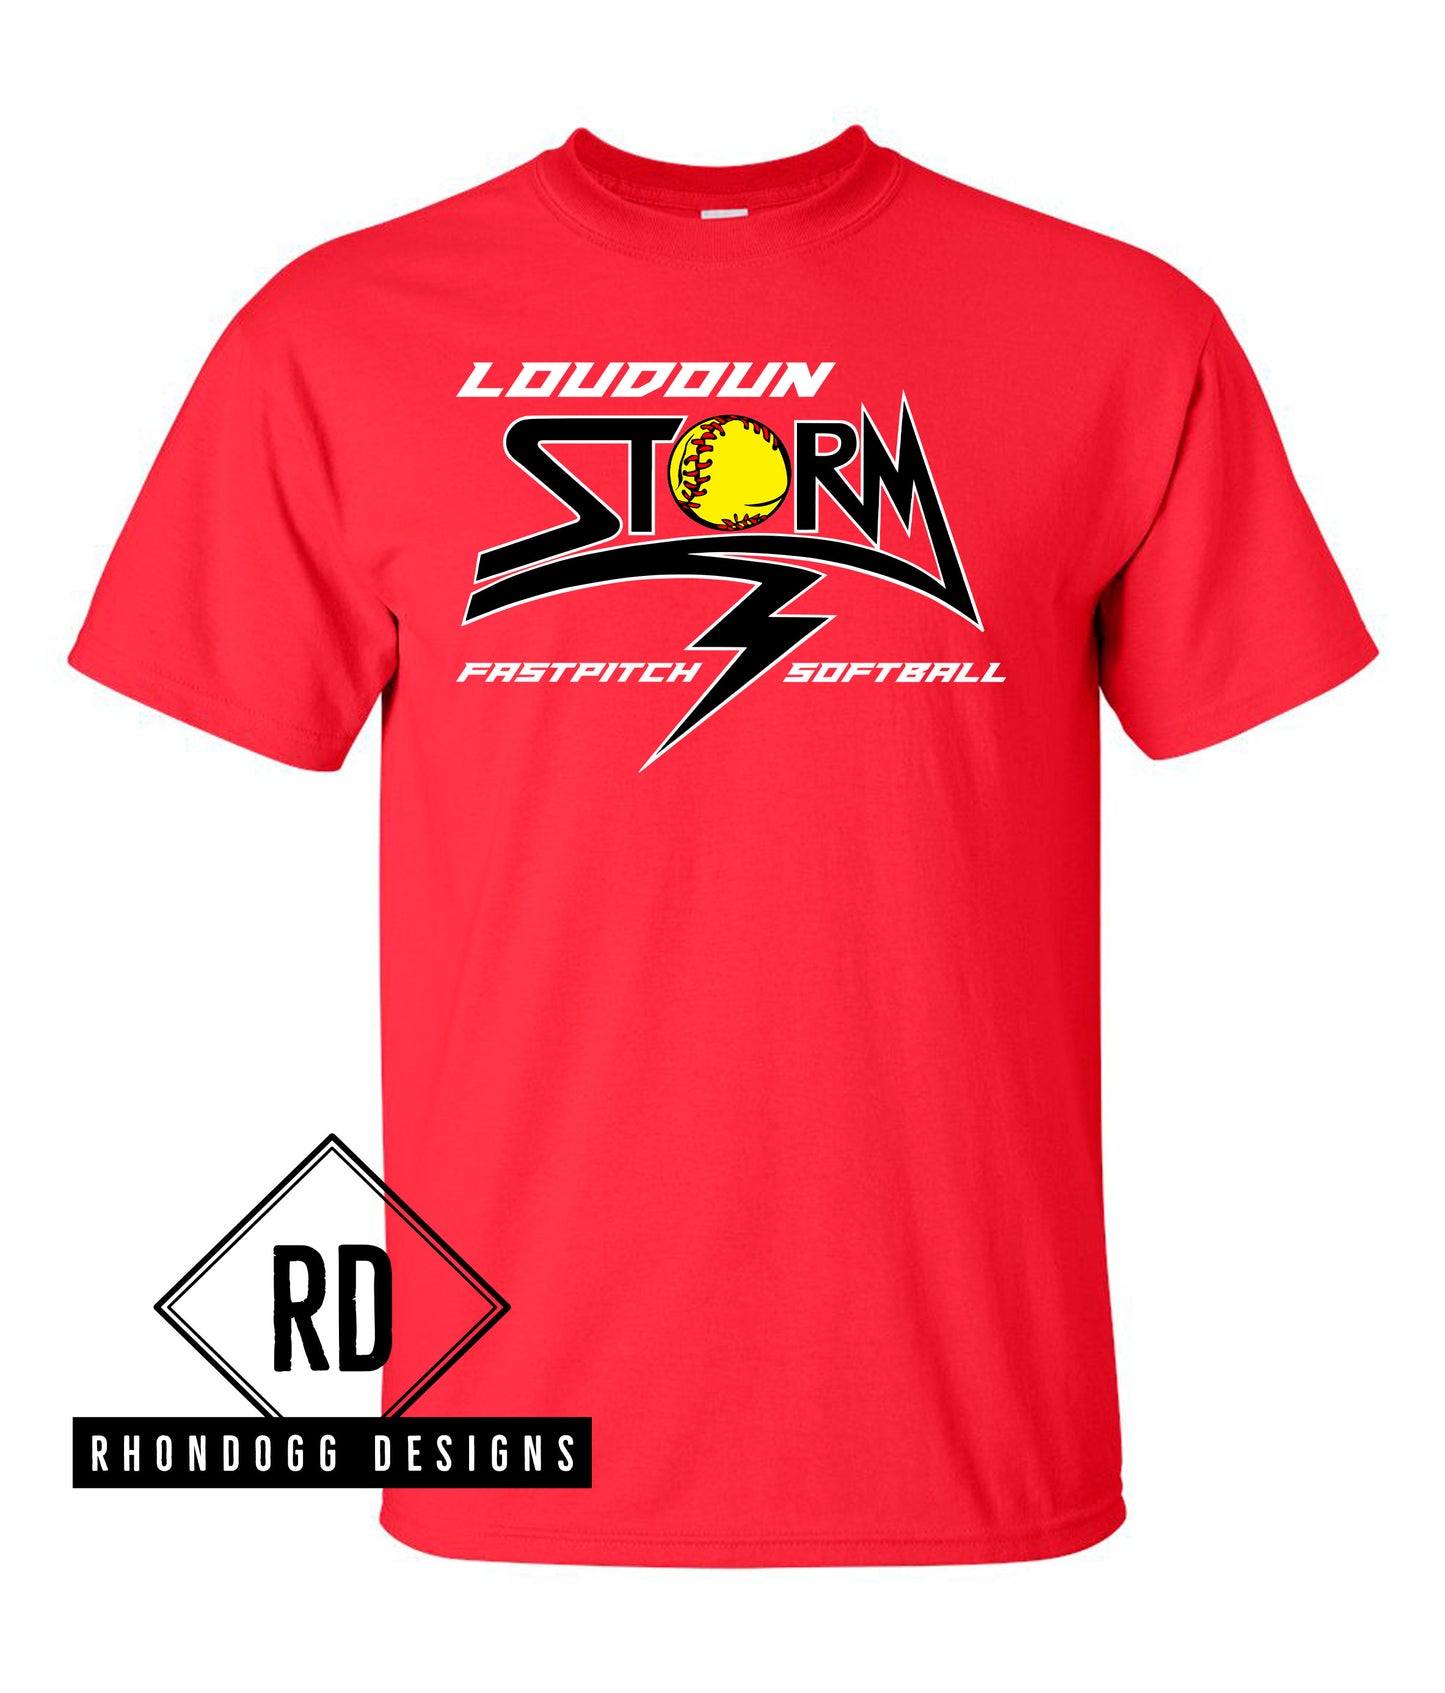 Gildan Loudoun Storm Cotton T-Shirt